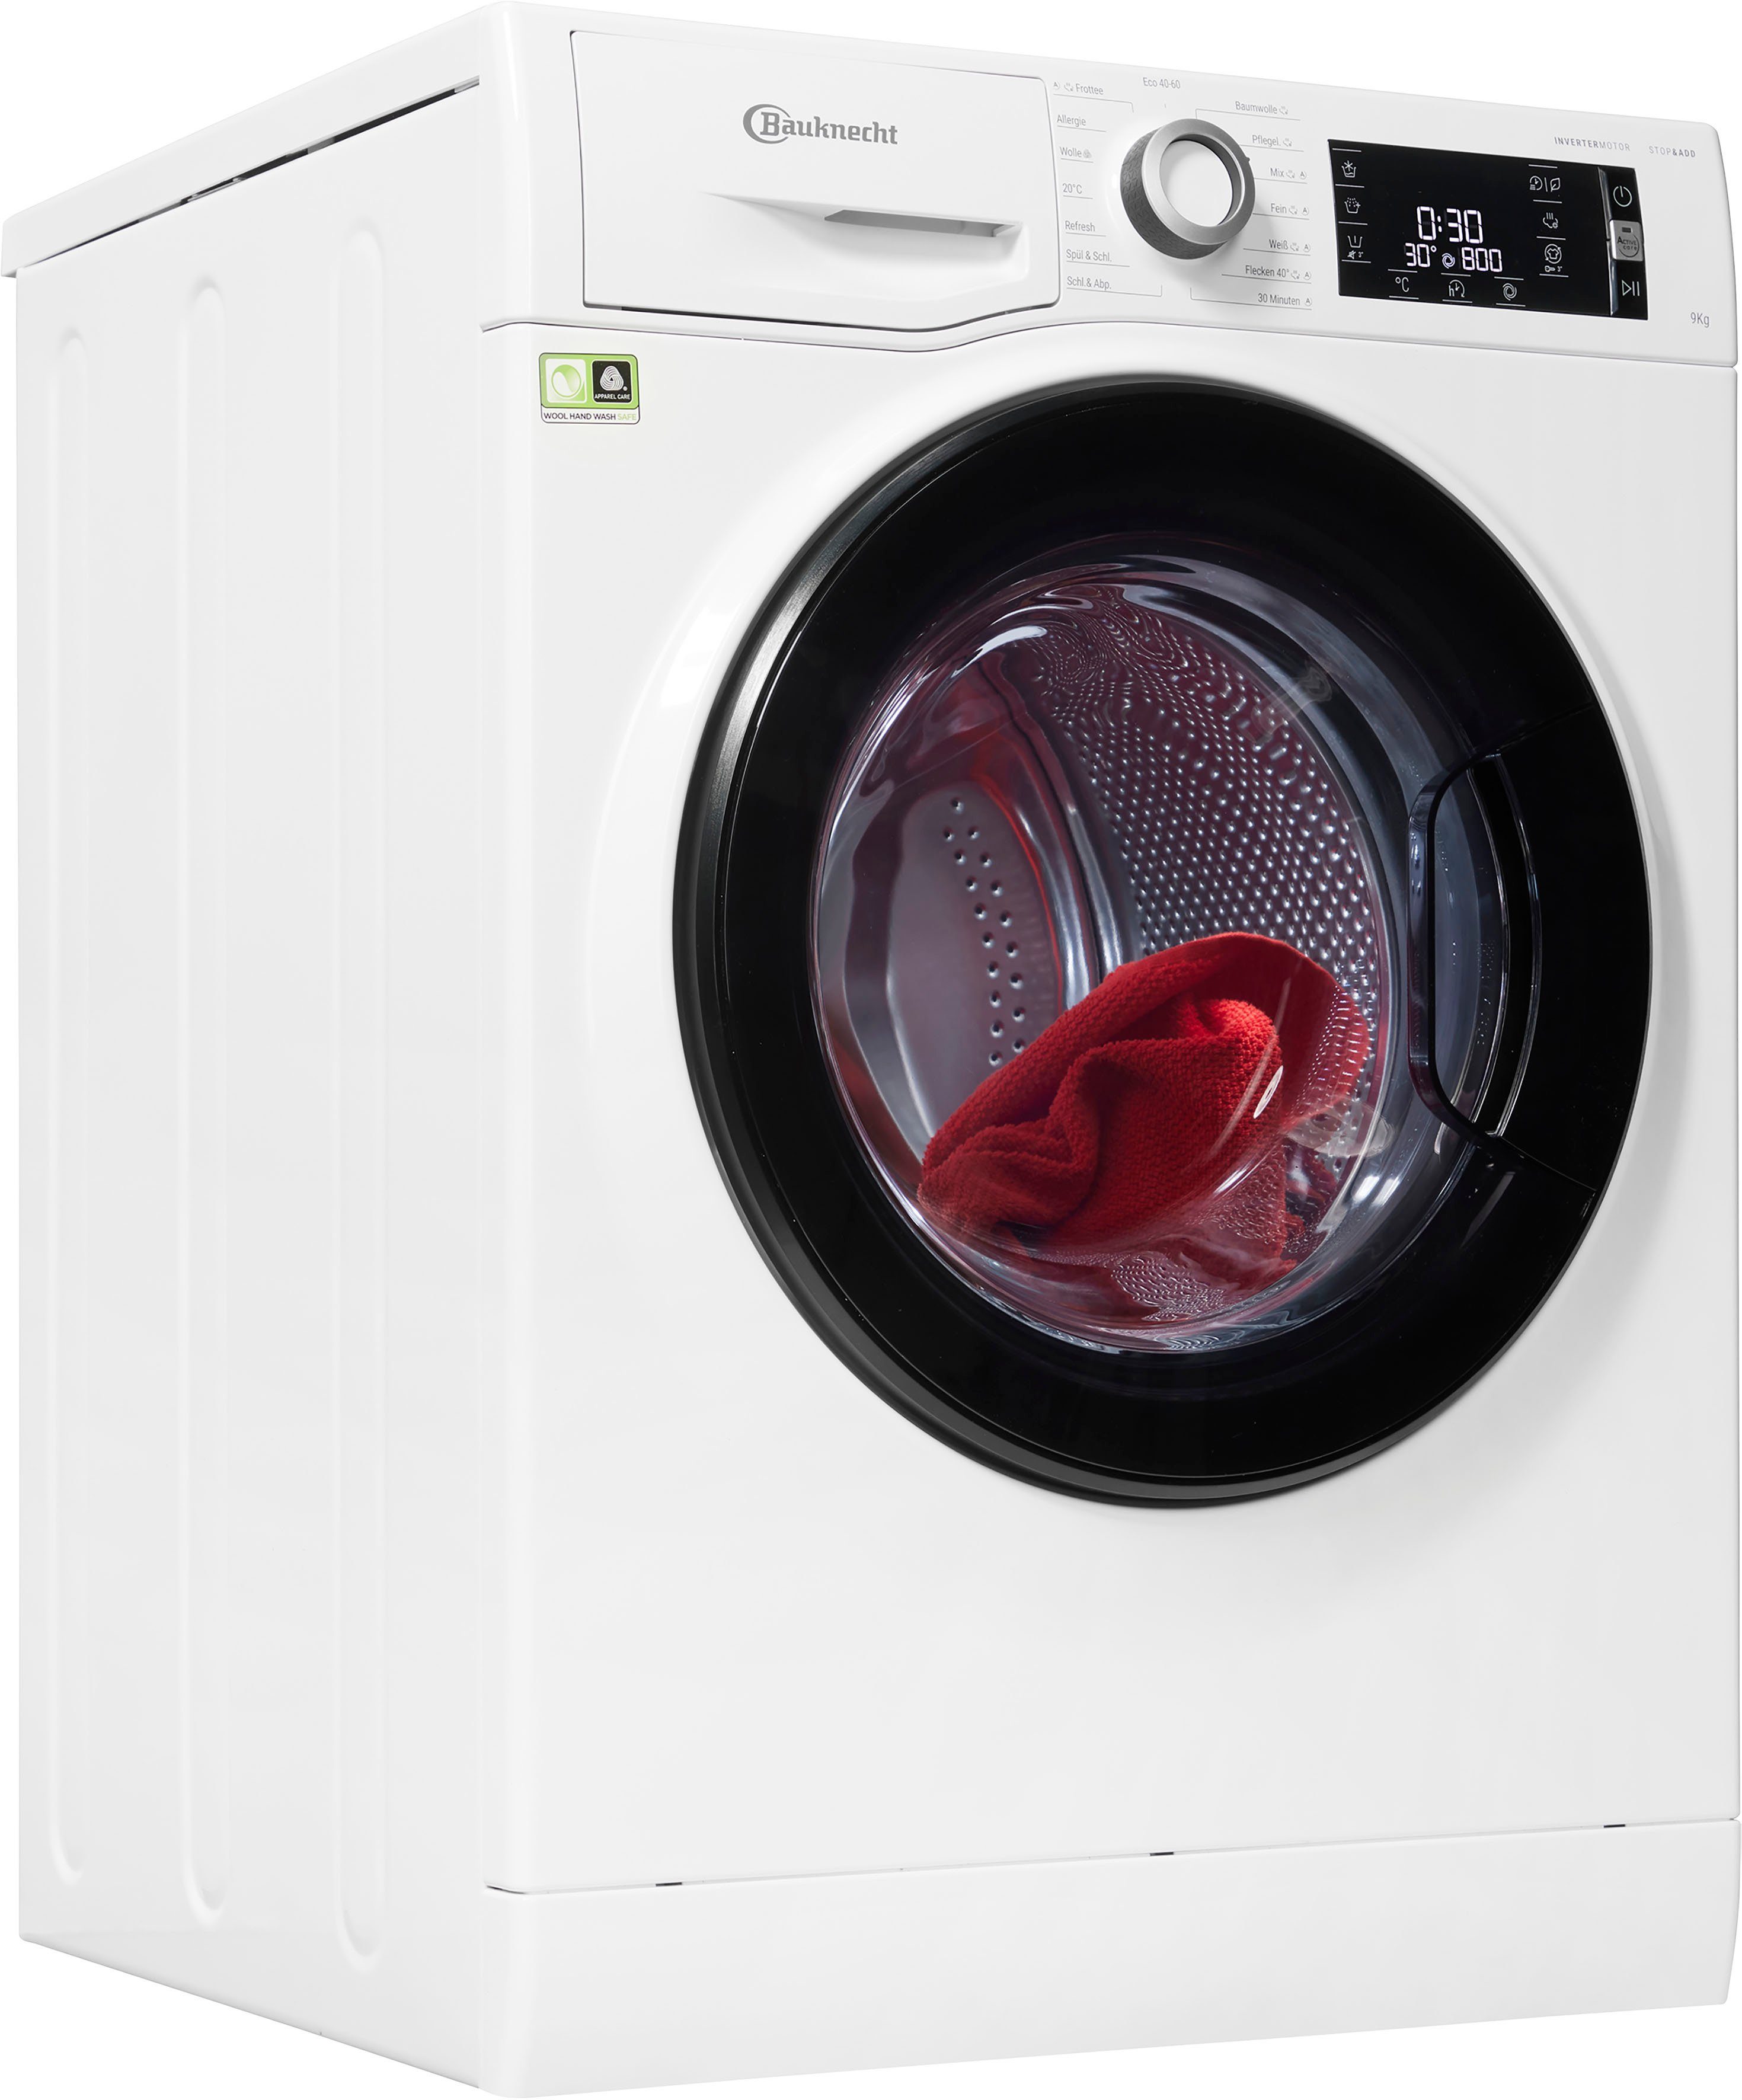 BAUKNECHT Waschmaschine WM 9A, 1400 9 kg, U/min Elite